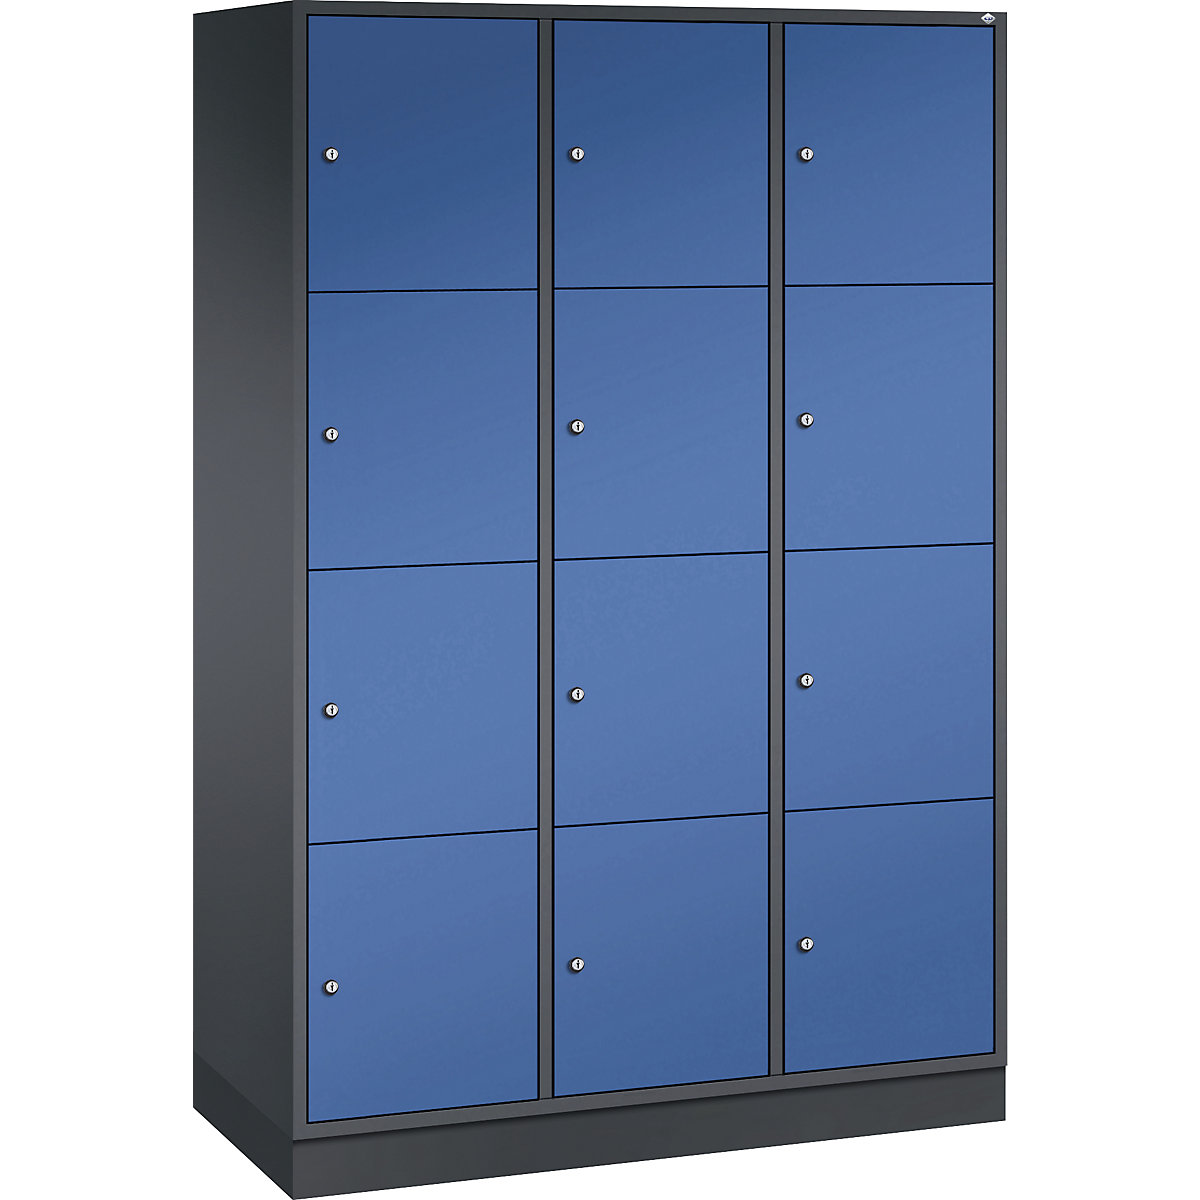 Vestiaire multicases en acier INTRO, casiers hauteur 435 mm – C+P, l x p 1220 x 500 mm, 12 casiers, corps gris noir, portes bleu gentiane-4